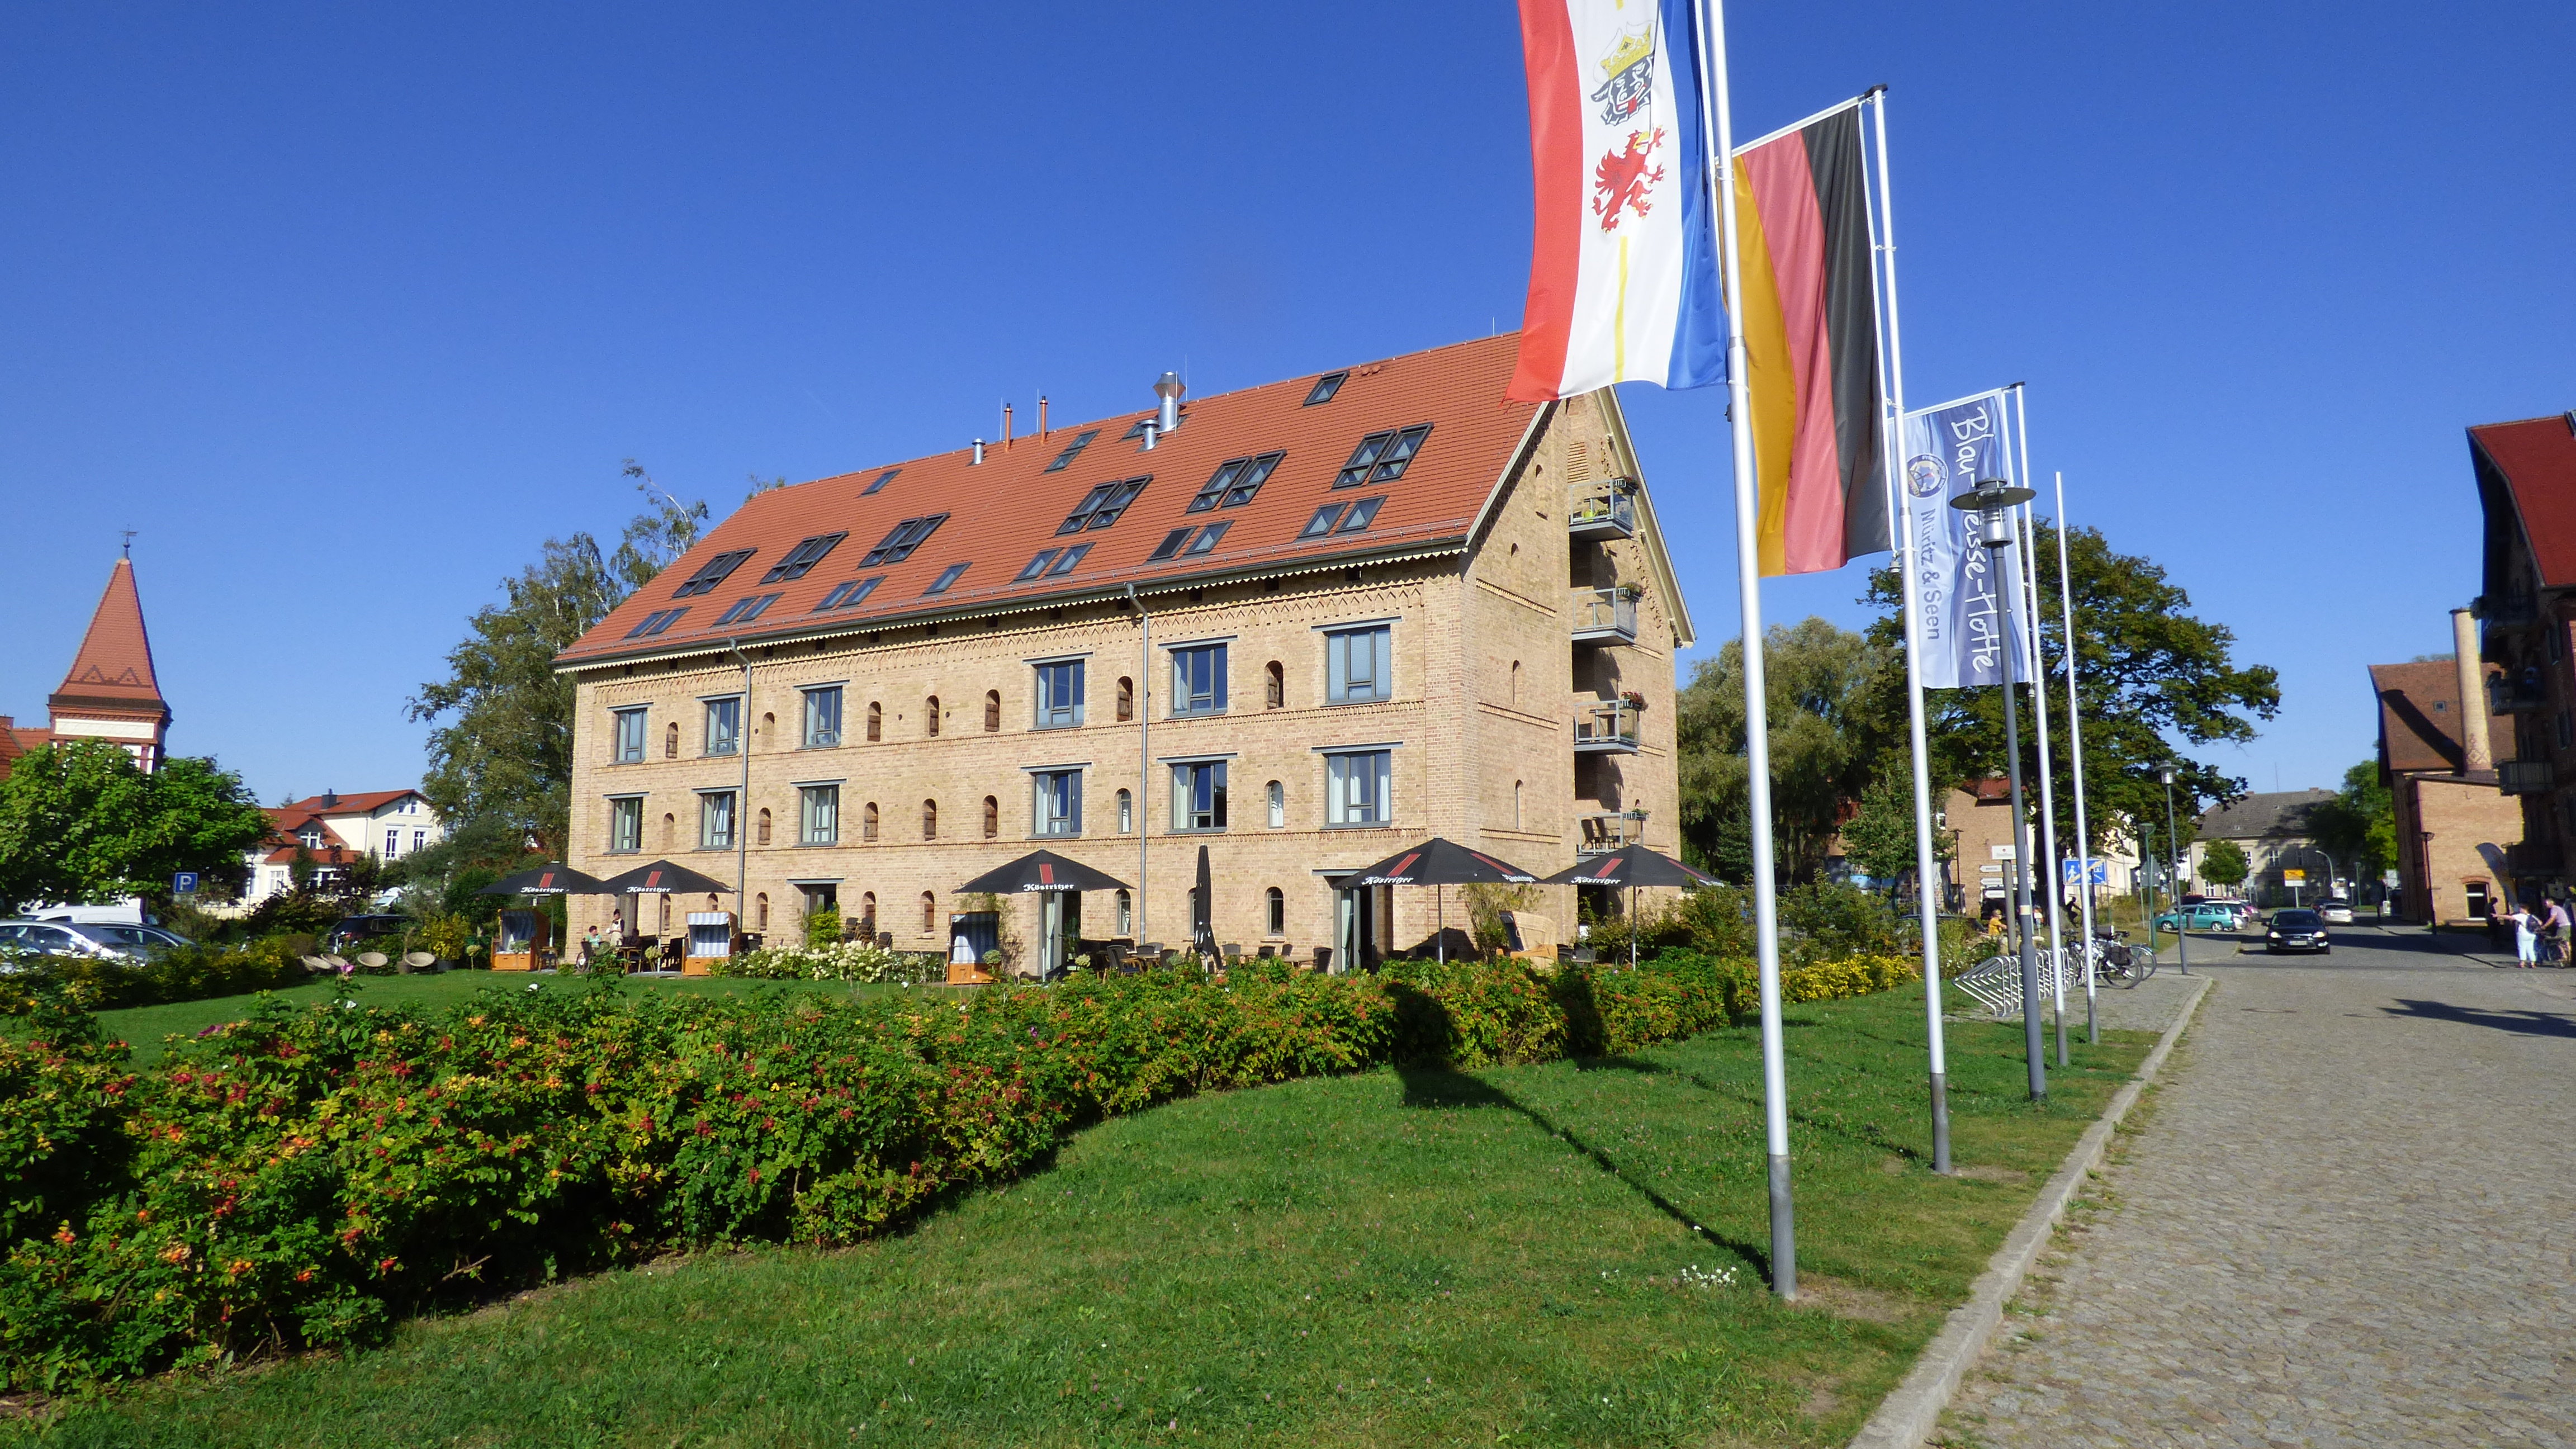 Hotel Alter Kornspeicher In Neustrelitz Great Prices At Hotel Info